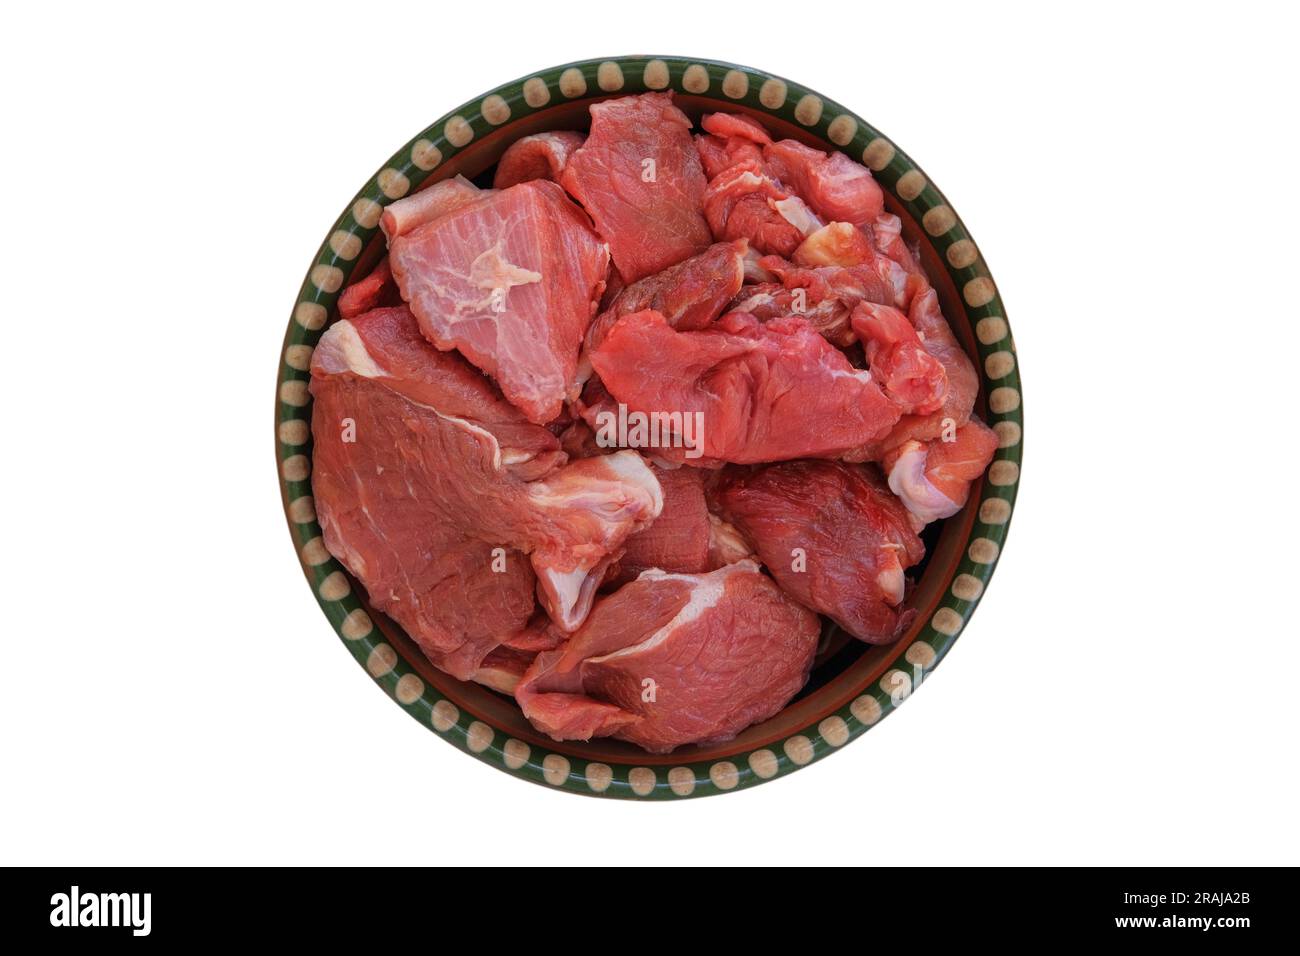 Morceaux de viande sur un plat rustique isolé sur fond blanc. Boeuf cru pour la cuisson. Vue de dessus. Banque D'Images